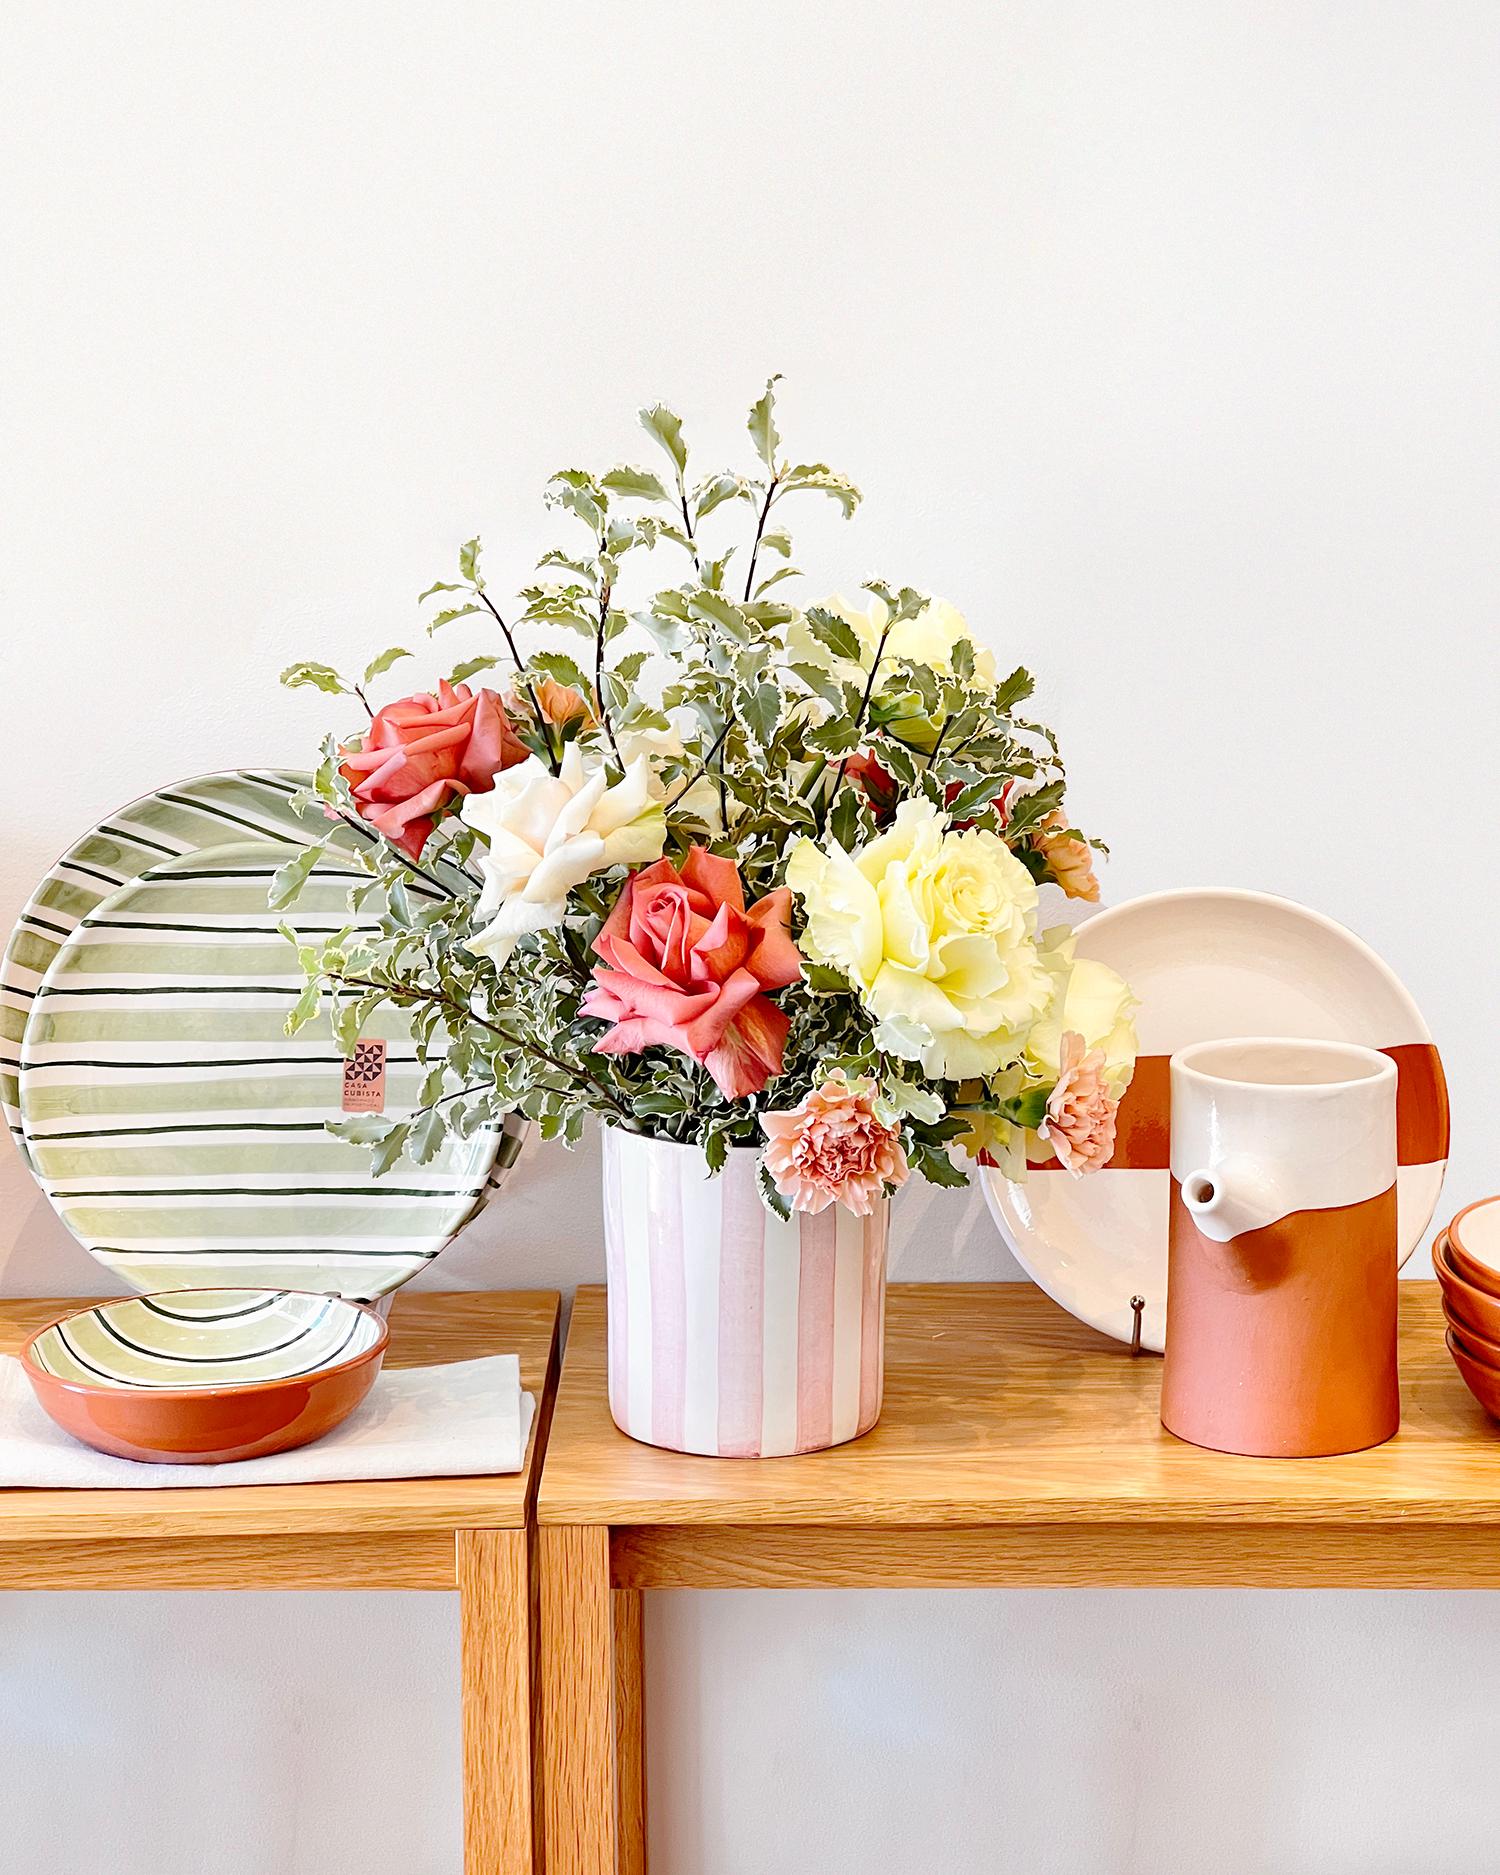 Un vase unique pour embellir votre intérieur
Ce vase Casa Cubista est une pièce de décoration intérieure artisanale en terre cuite avec des rayures audacieuses, blanches et grises. Fabriqué à la main en Europe, ce vase issu du commerce équitable et